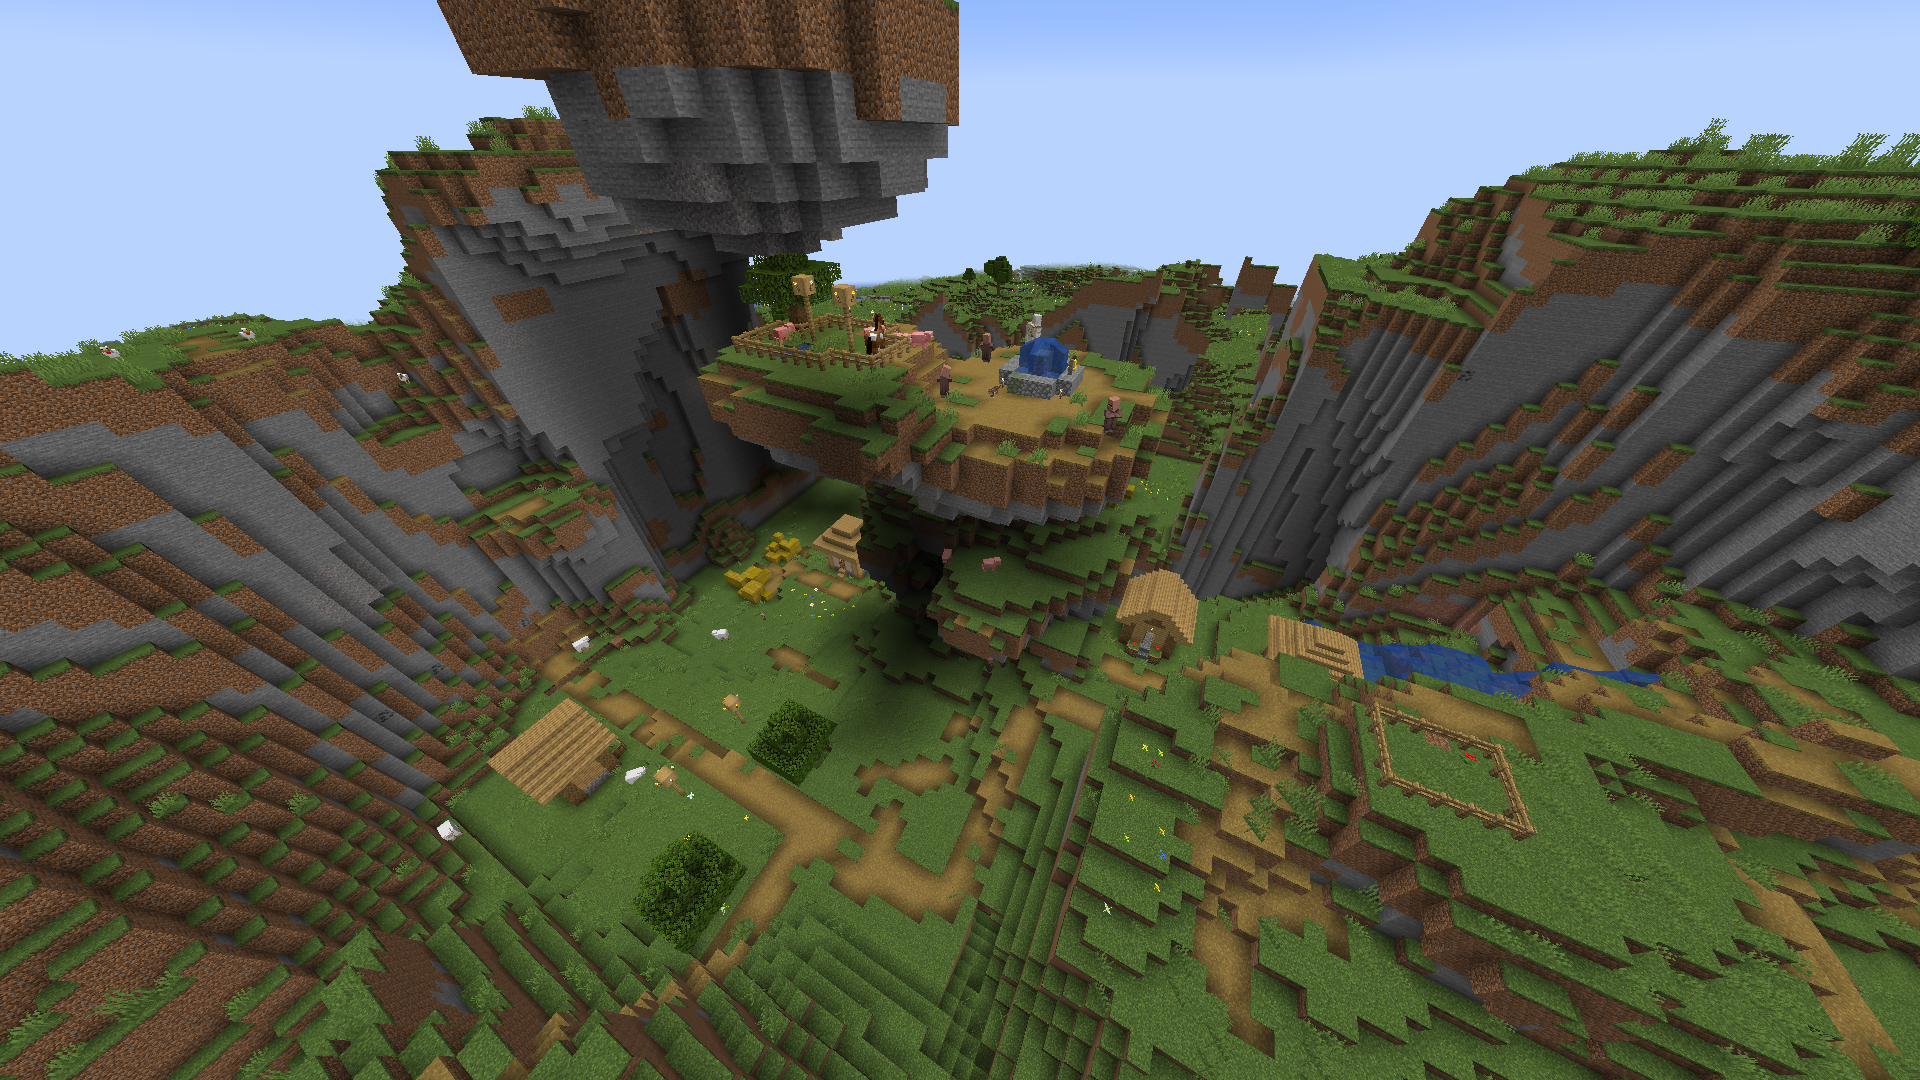 Vesnice v Minecraftu, která je rozložena přes kopce